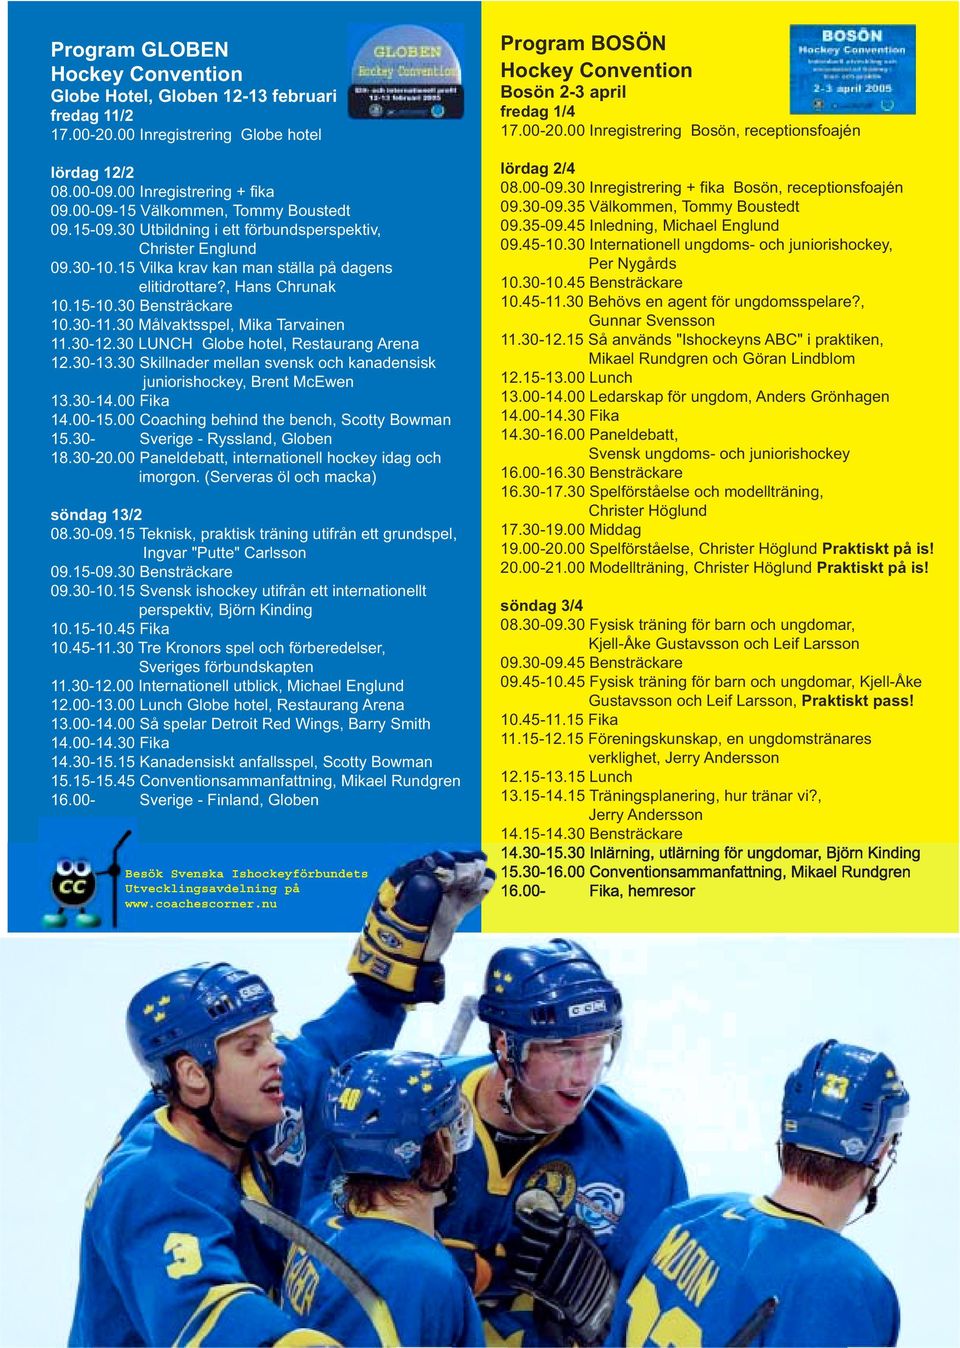 30 Bensträckare 10.30-11.30 Målvaktsspel, Mika Tarvainen 11.30-12.30 LUNCH Globe hotel, Restaurang Arena 12.30-13.30 Skillnader mellan svensk och kanadensisk juniorishockey, Brent McEwen 13.30-14.